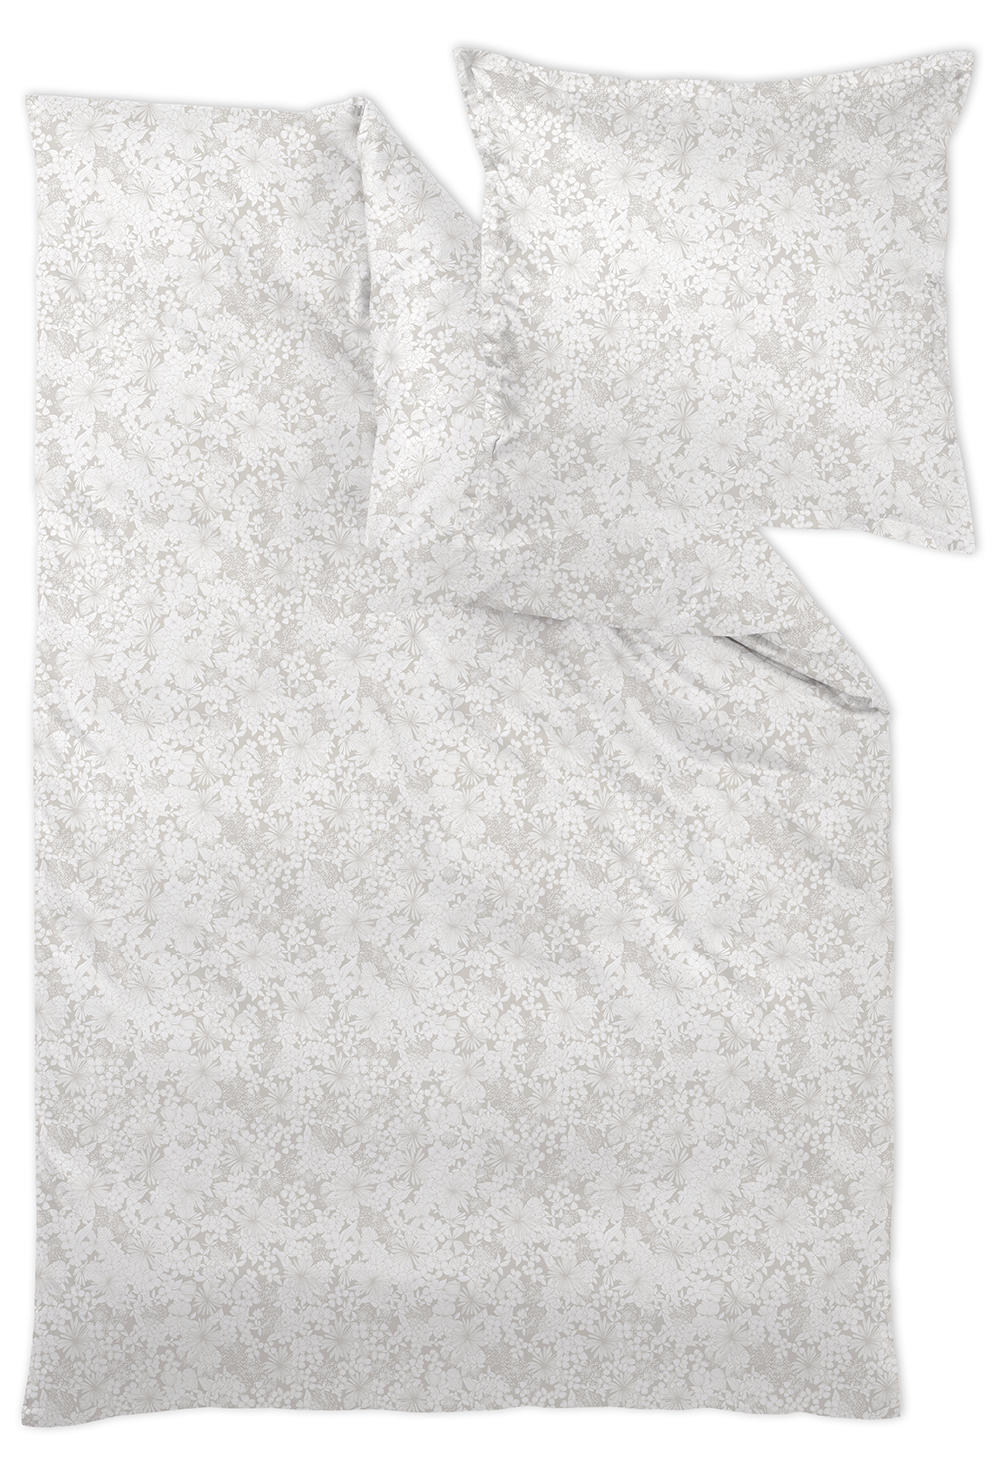 POSTELJINA 140/200 cm  - taupe, Konvencionalno, tekstil (140/200cm) - Curt Bauer